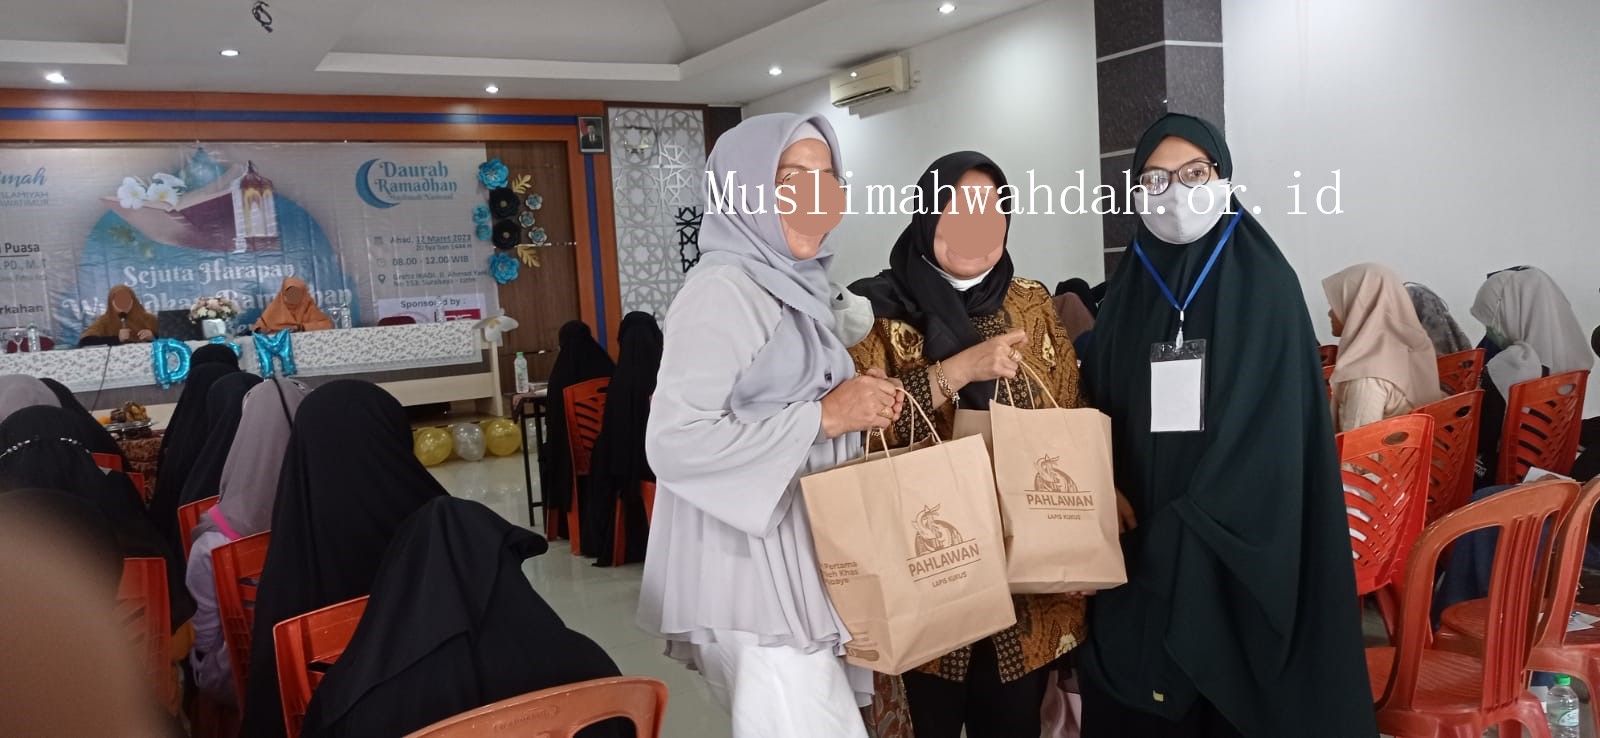 Sambut Ramadhan, DP3AK Provinsi Jatim Serukan Pencegahan Stunting Melalui Pembinaan Ojol Perempuan oleh Muslimah Wahdah